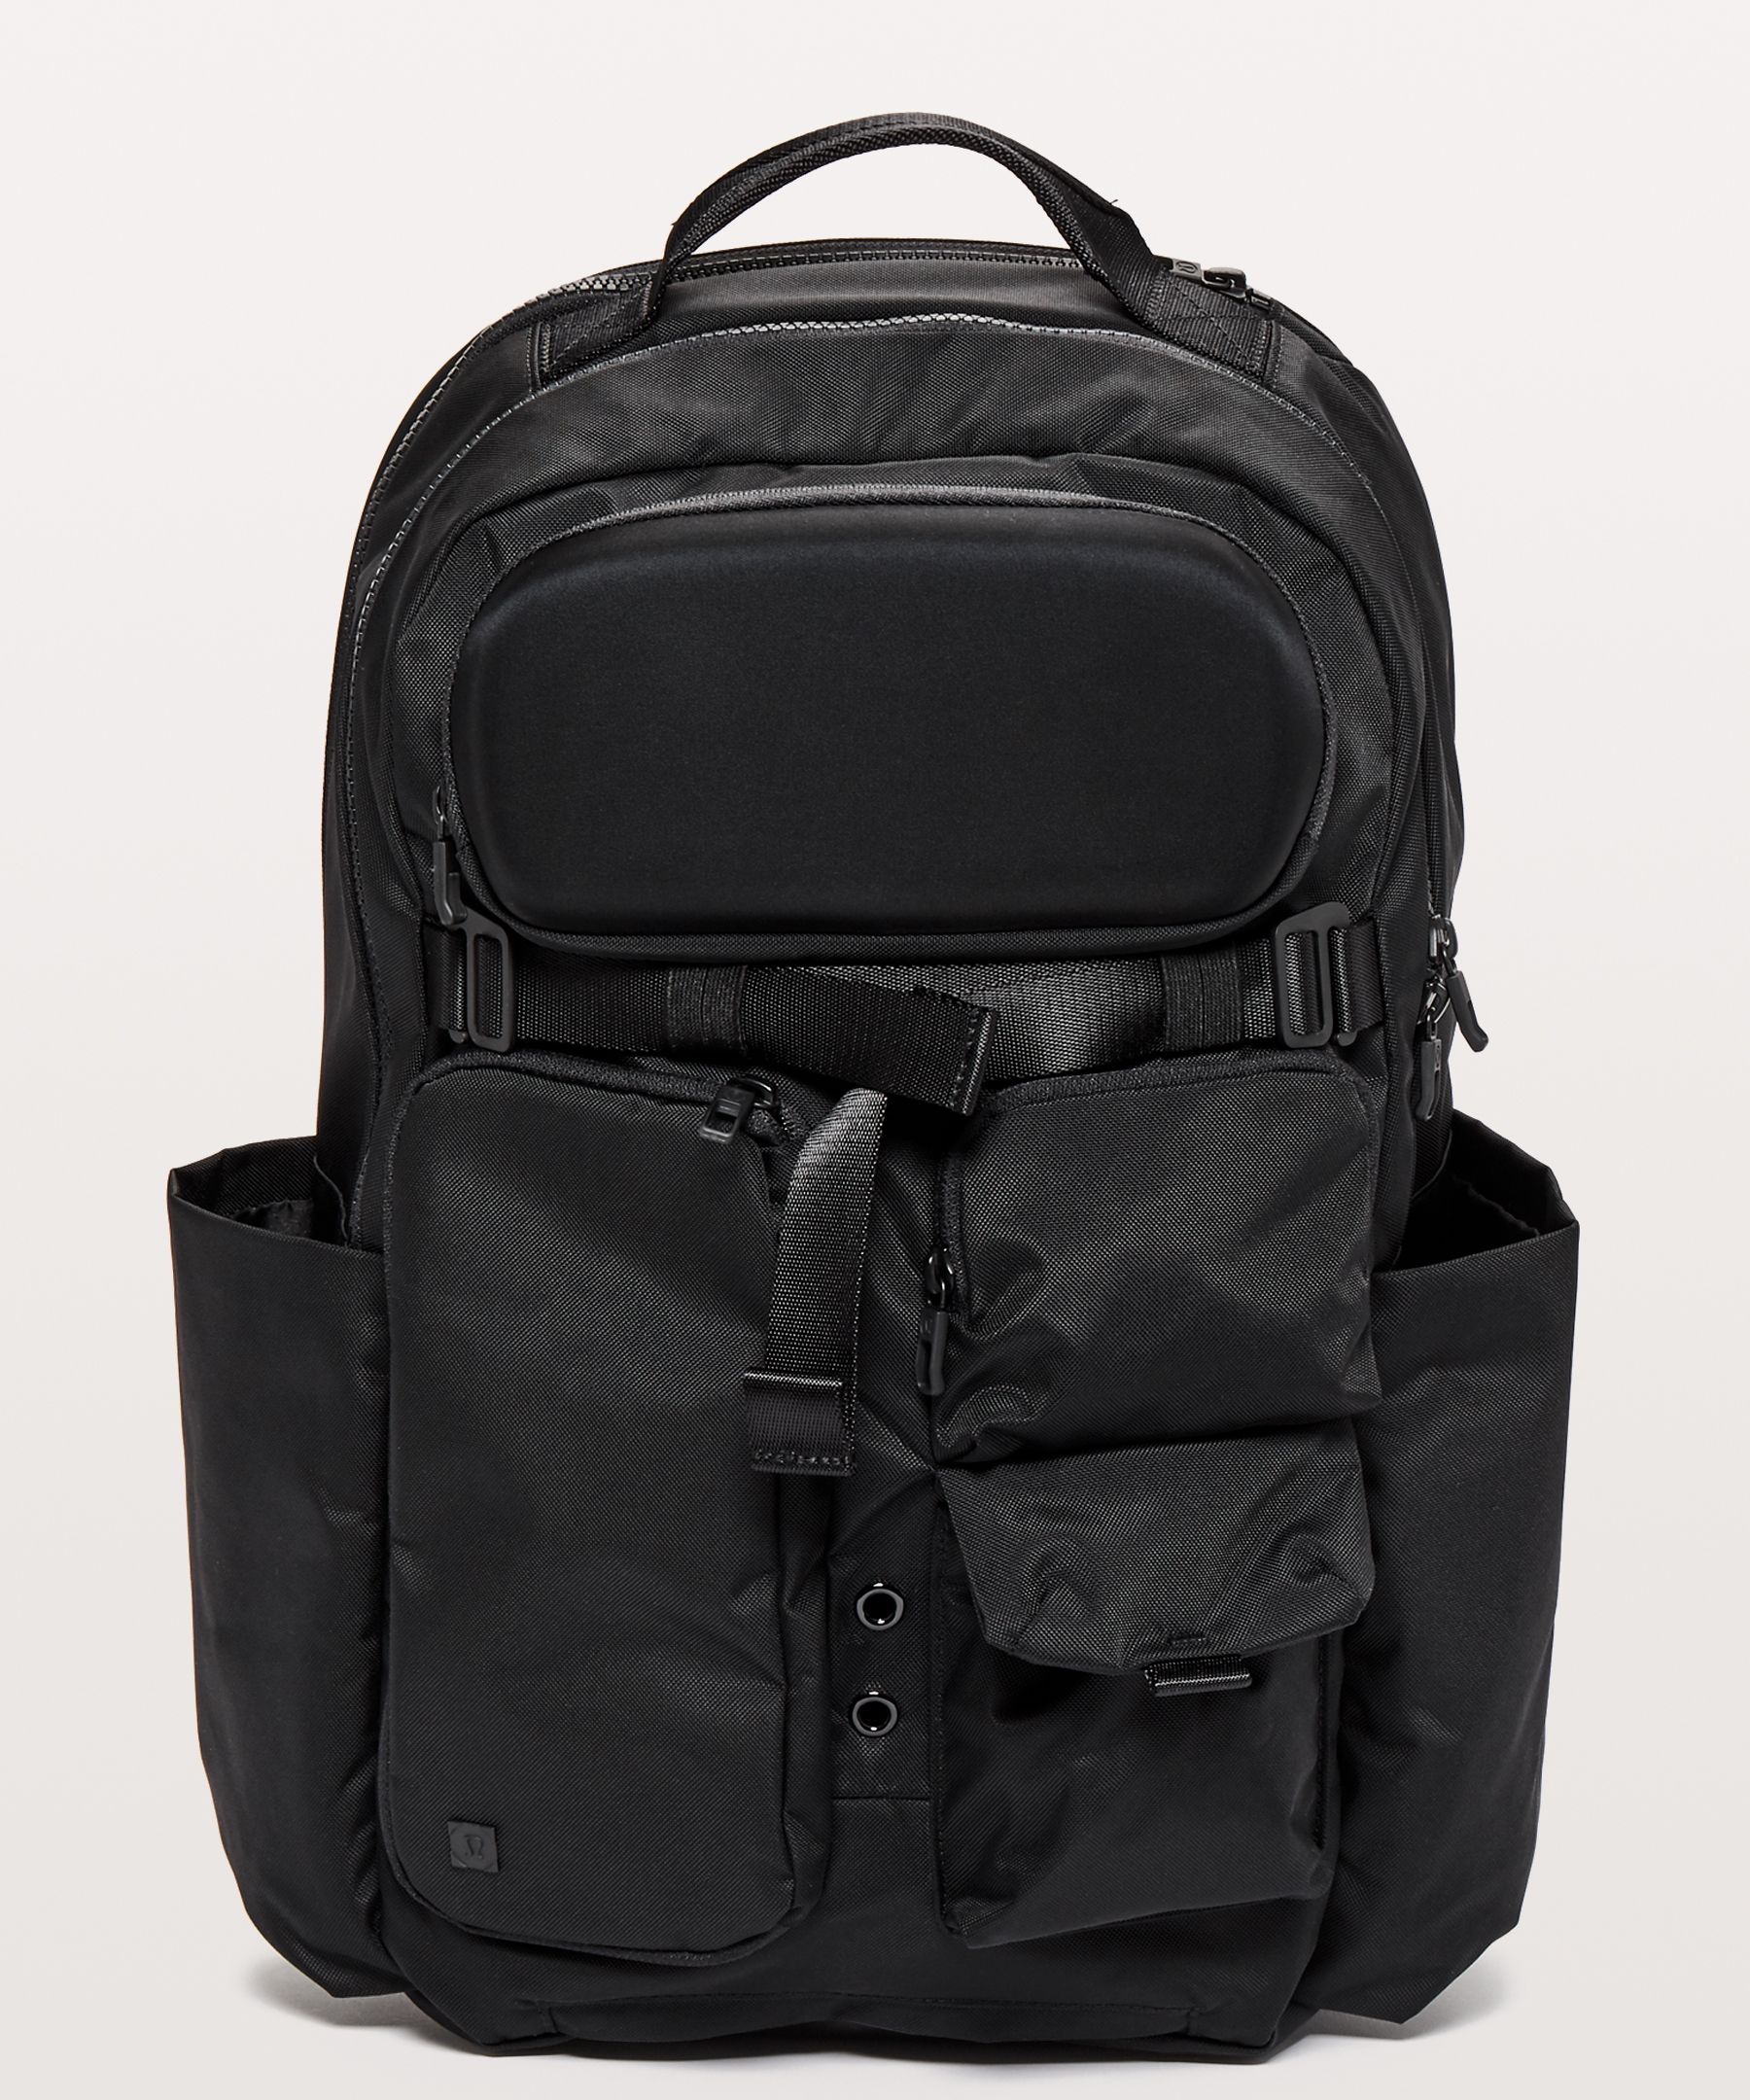 lulu cruiser backpack